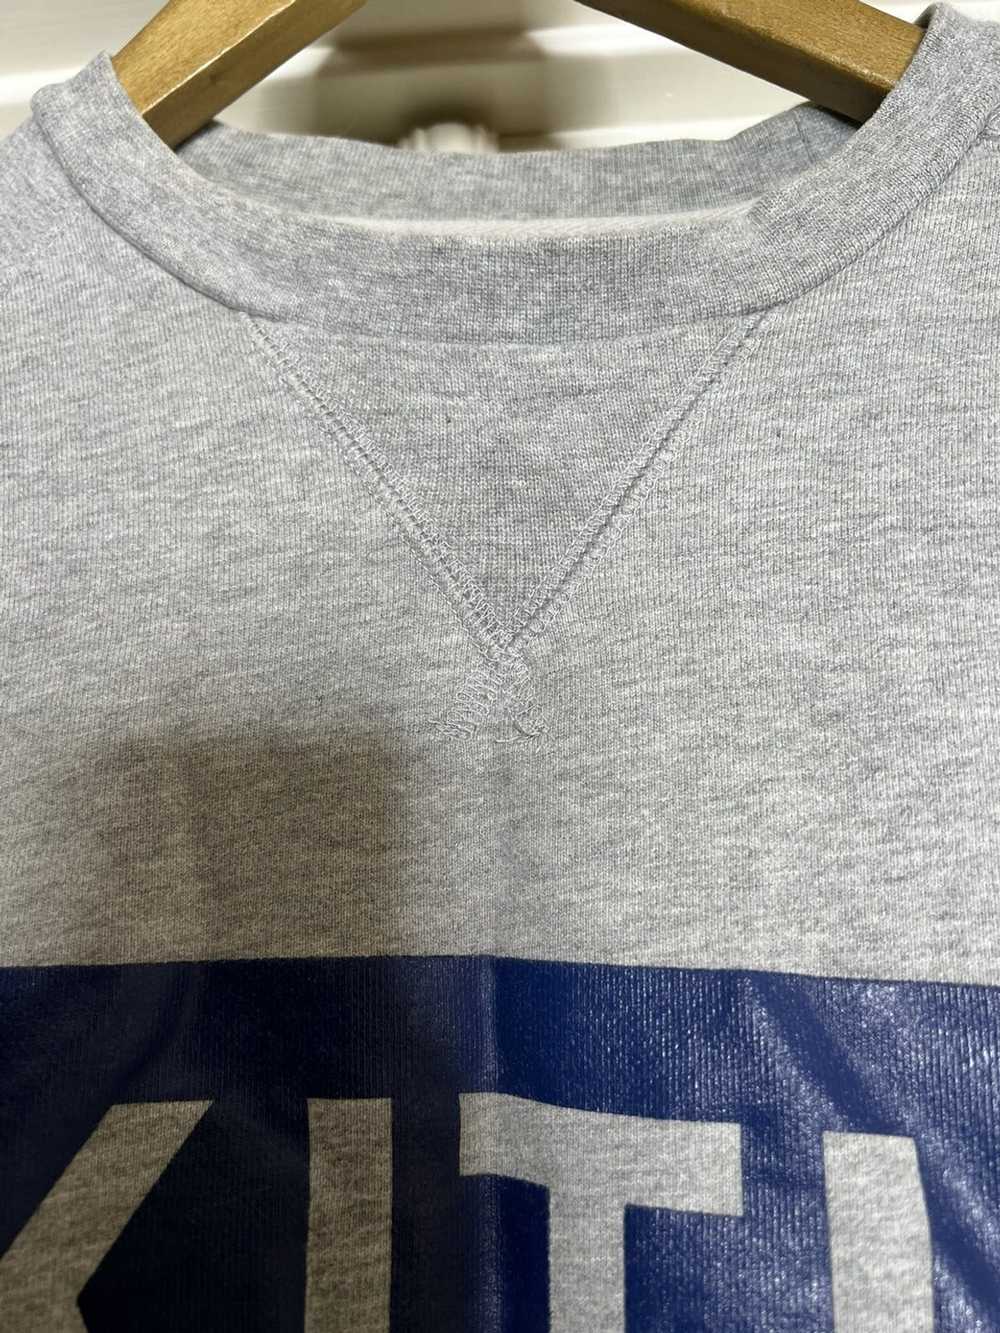 Kith Kith grey sweatshirt in Sz Small - image 5